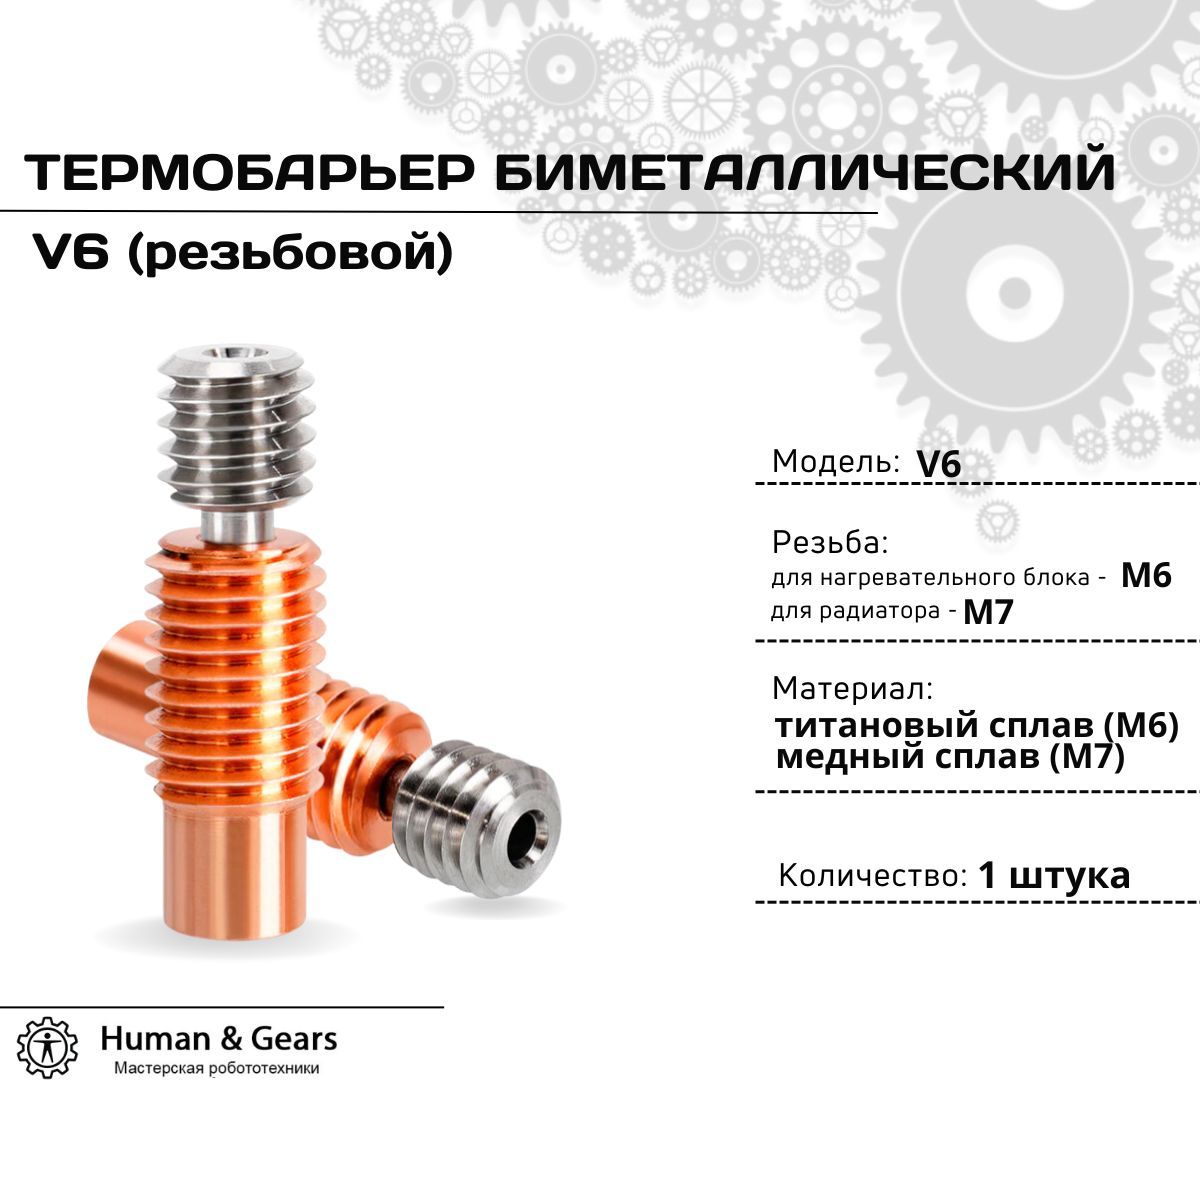 ТермобарьербиметаллическийрезьбовойE3DV6Bi-Metalдля3Dпринтера/ГорлоМедь-Титан